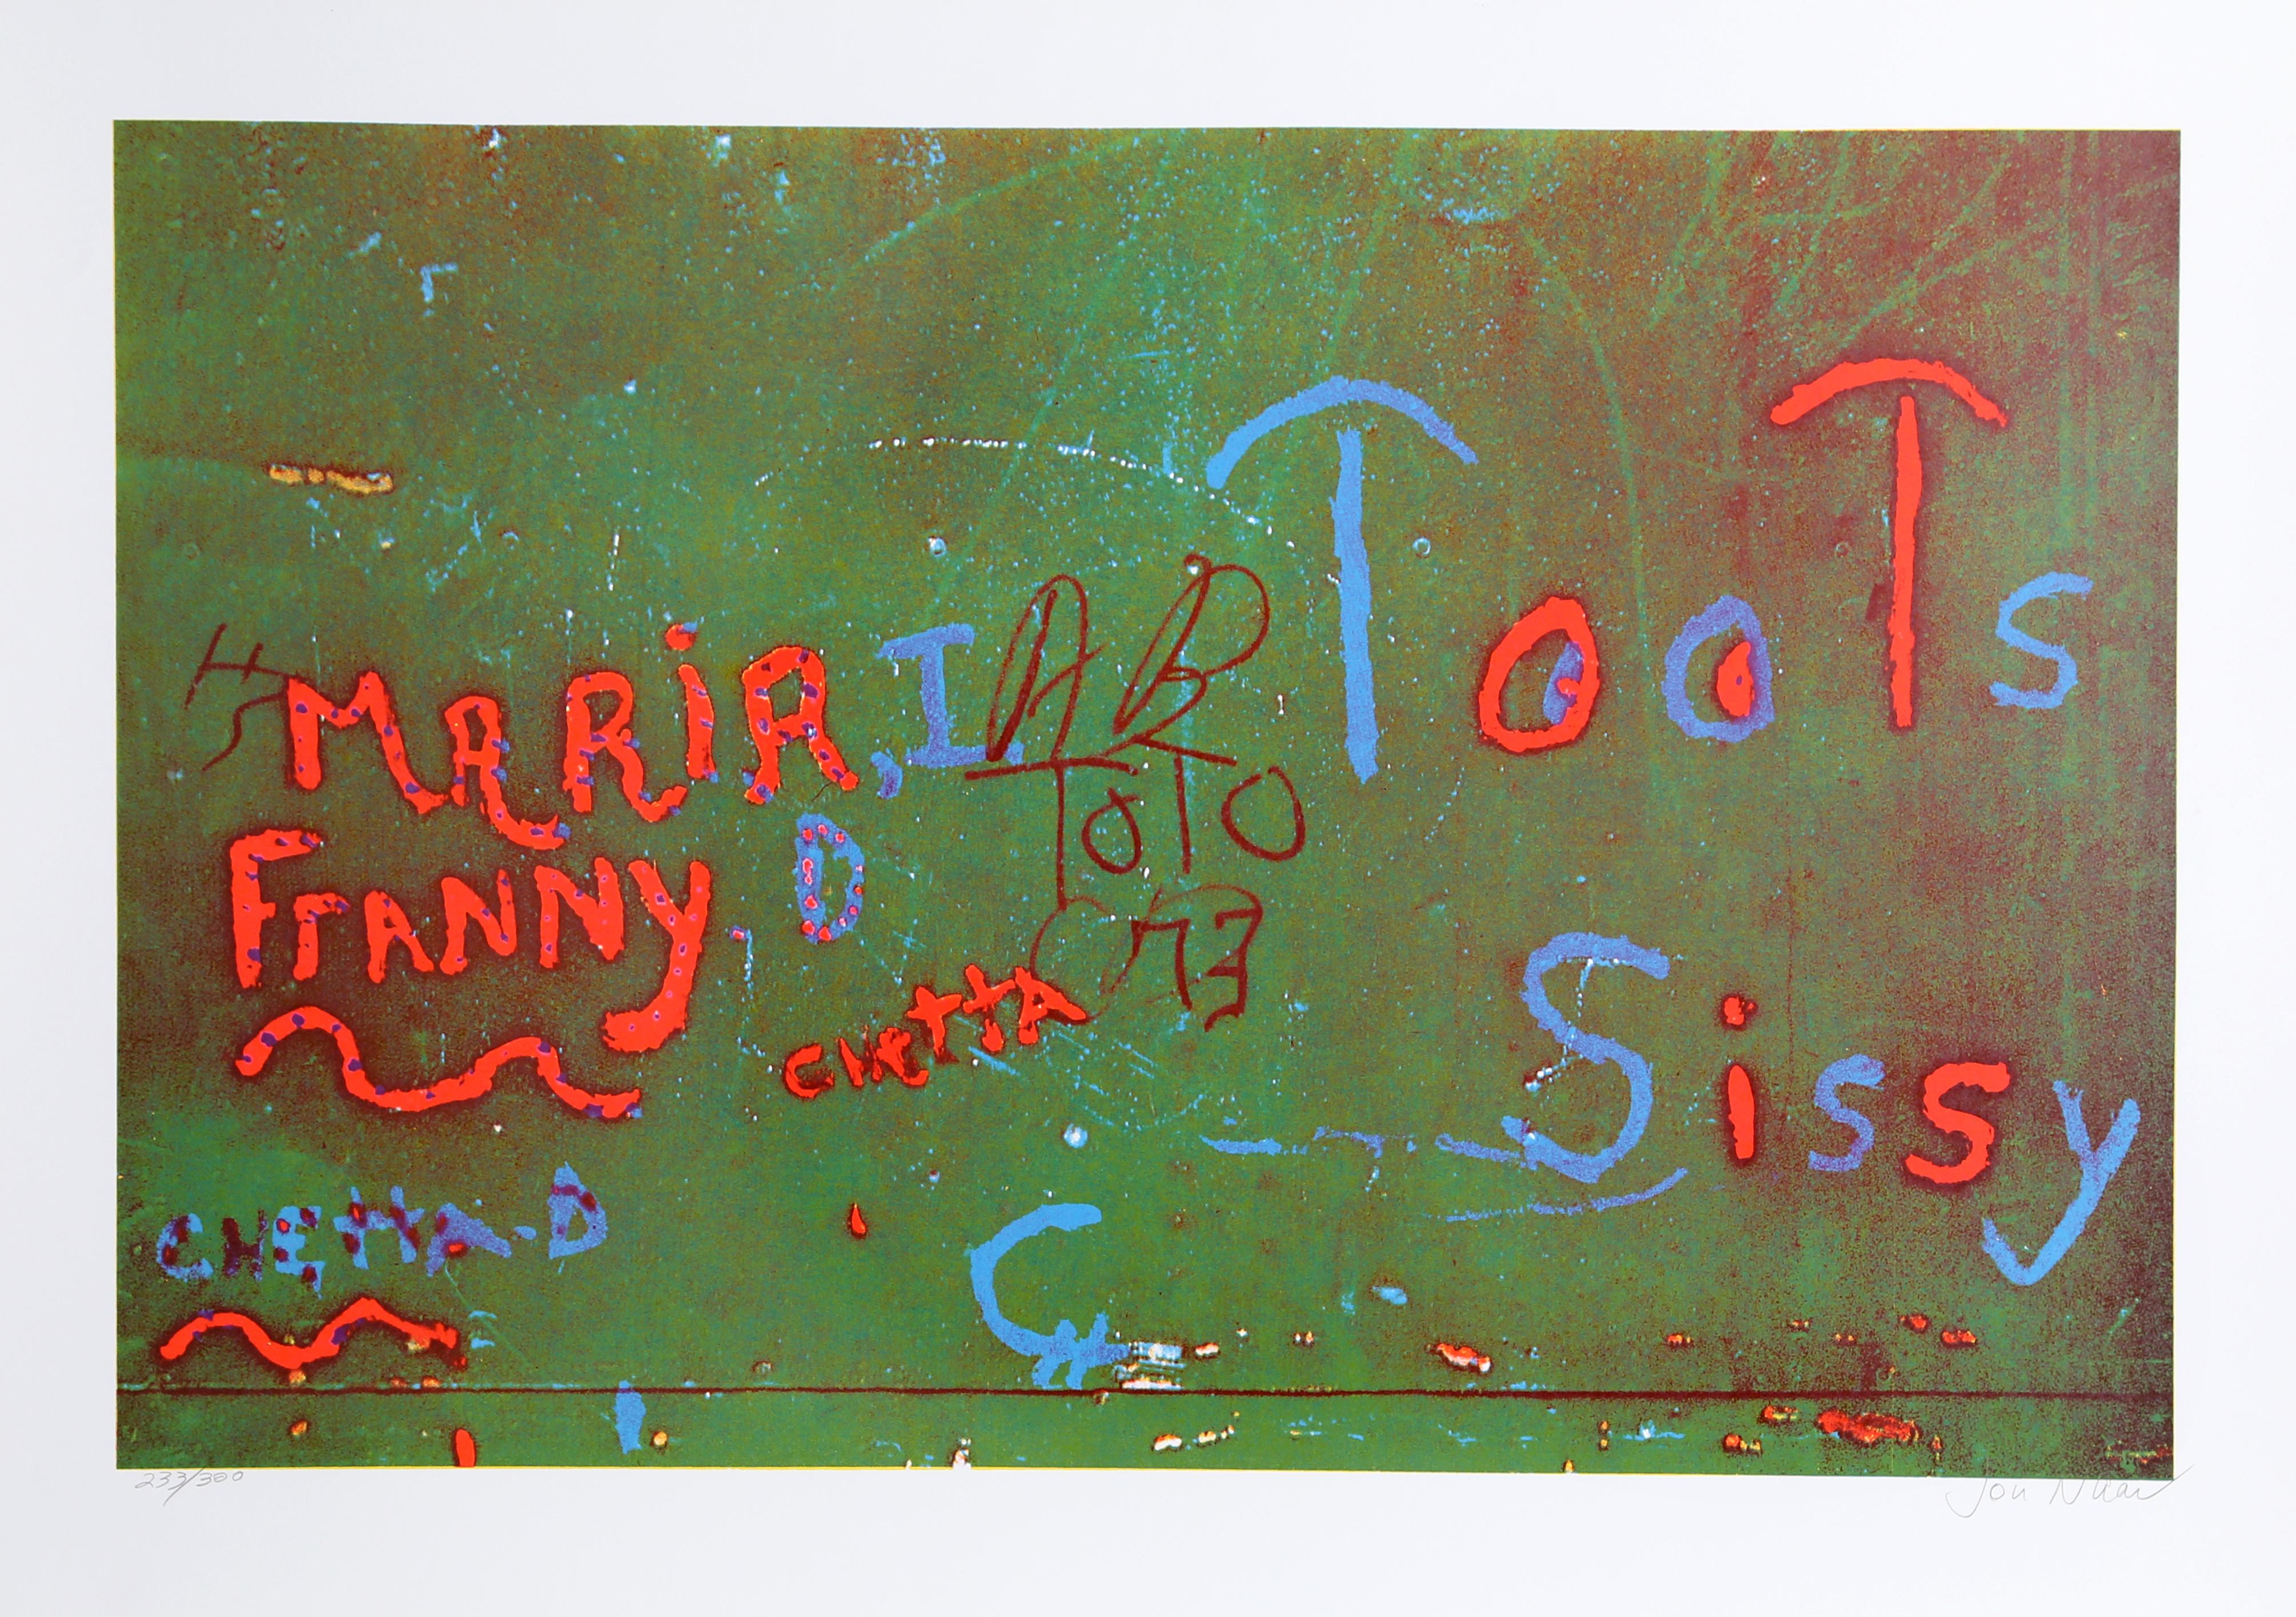 Künstler: Jon Naar
Portfolio: Der Glaube an Graffiti
Titel: Toots von Faith of Graffiti
Jahr: 1974
Medium: Serigraphie, signiert und nummeriert mit Bleistift
Auflage: 300
Größe: 24,5 x 34 Zoll

Gedruckt bei Circle Press, Chicago
Veröffentlicht von